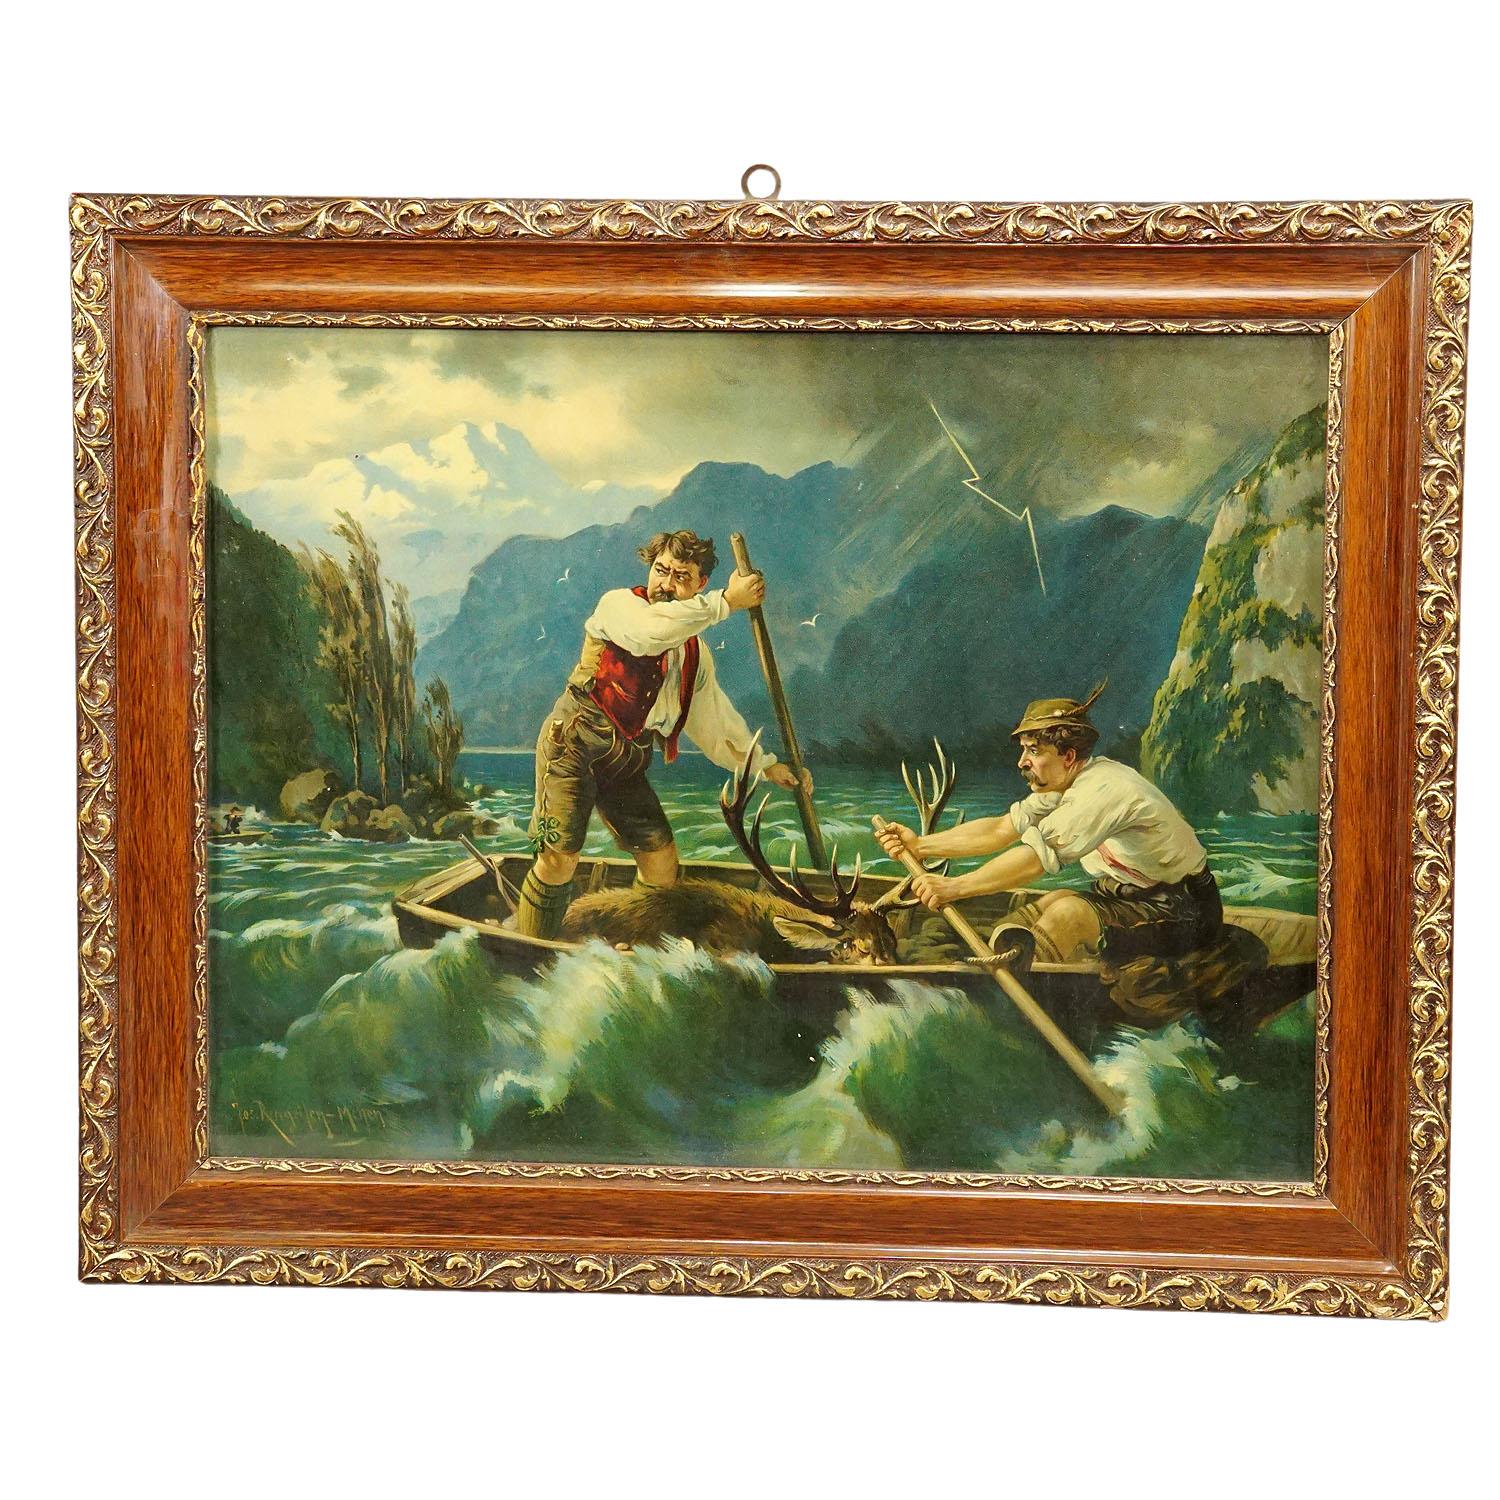 Impression à l'huile ancienne avec scène de pêcheur dramatique d'après Josef Ringeisen

Une gravure à l'huile colorée représentant un paysage dramatique de braconnage dans la forêt bavaroise. Deux braconniers dans un bateau tentent de s'échapper